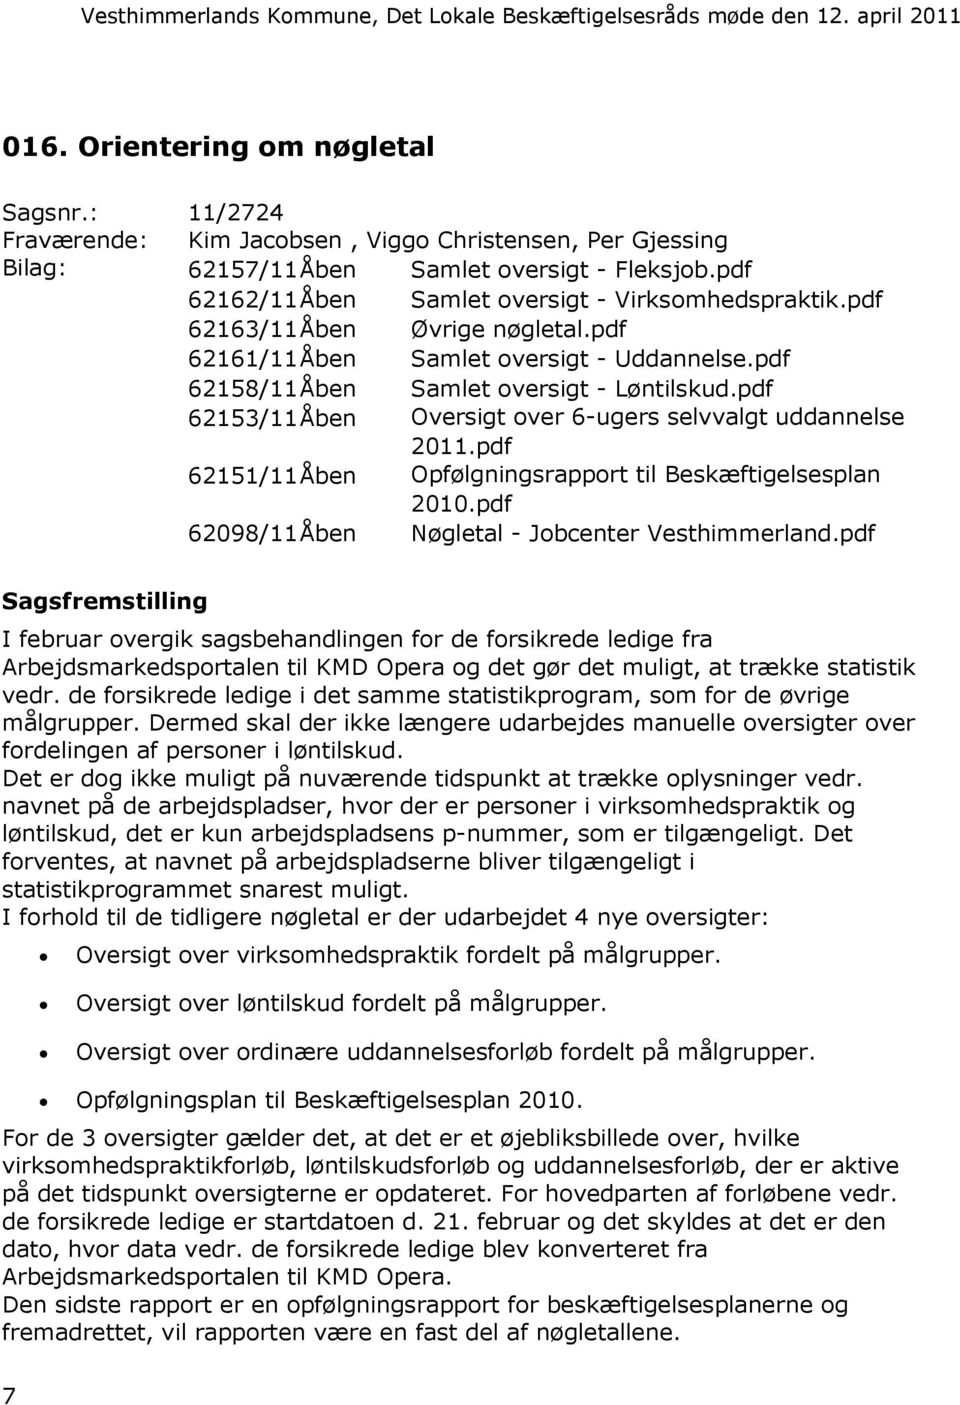 pdf 62153/11Åben Oversigt over 6-ugers selvvalgt uddannelse 2011.pdf 62151/11Åben Opfølgningsrapport til Beskæftigelsesplan 2010.pdf 62098/11Åben Nøgletal - Jobcenter Vesthimmerland.